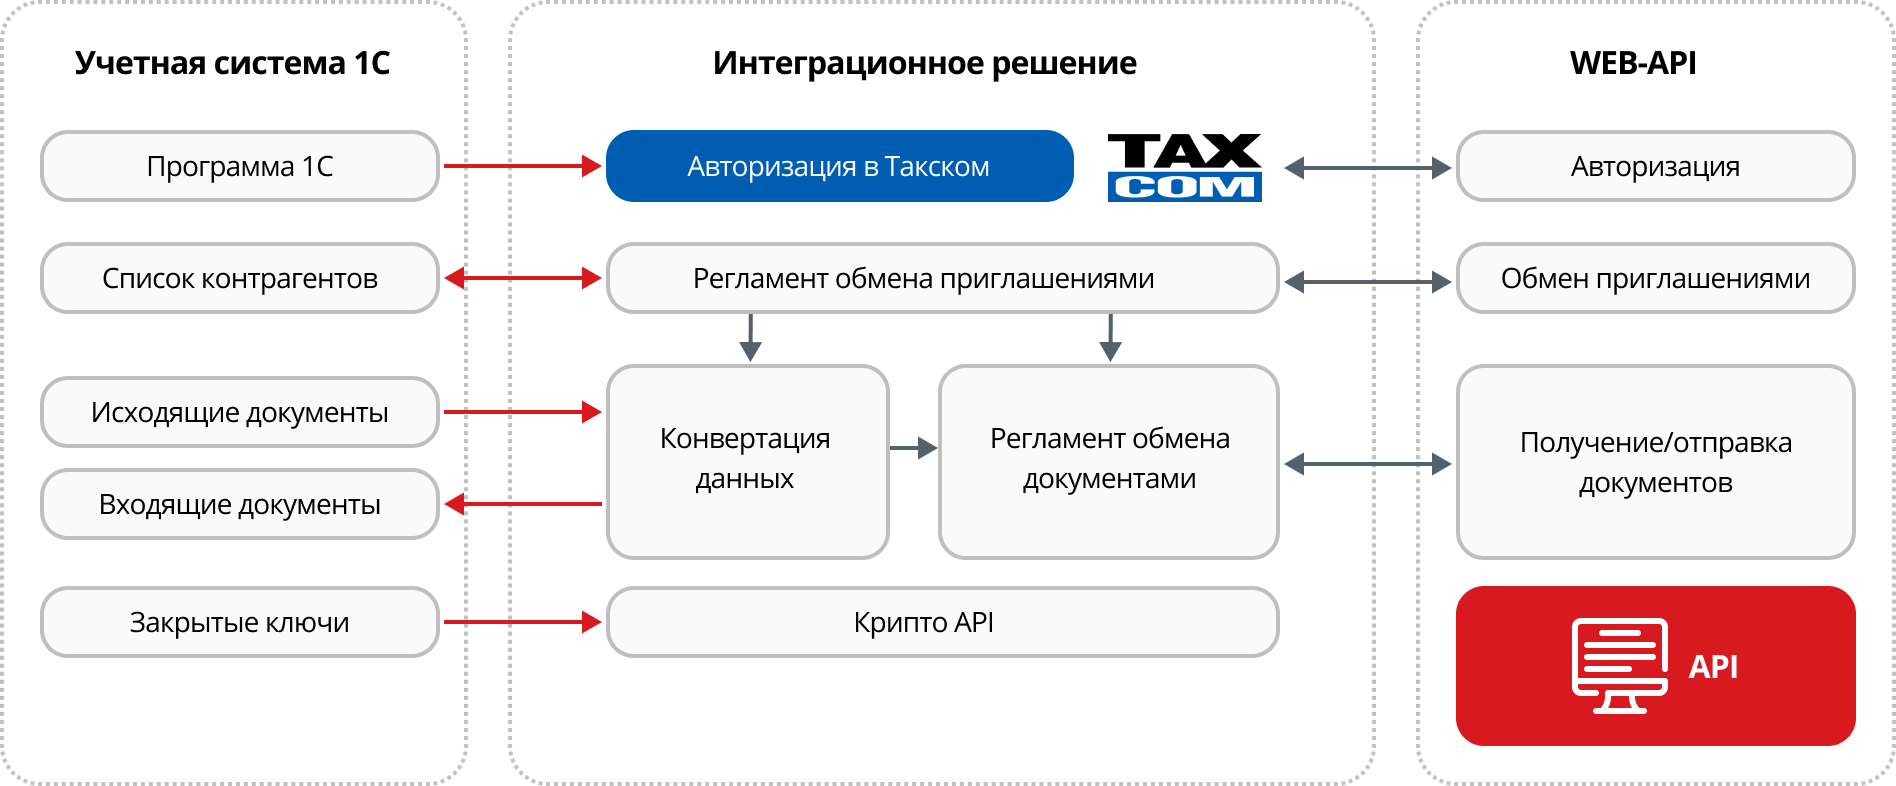 Схема работы с Такском через  API